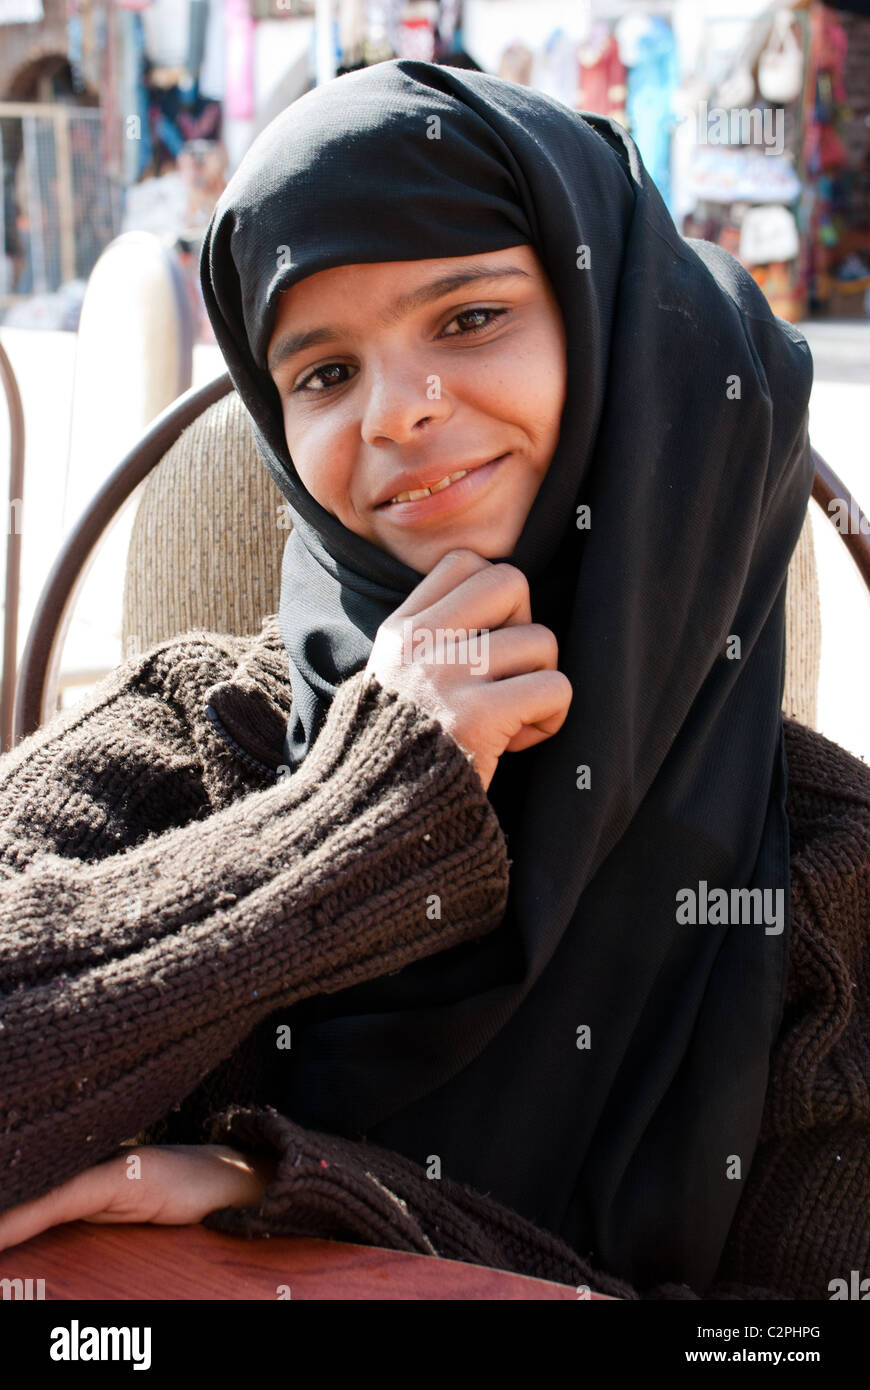 Jeune fille bédouine - Dahab, péninsule du Sinaï, Égypte Banque D'Images